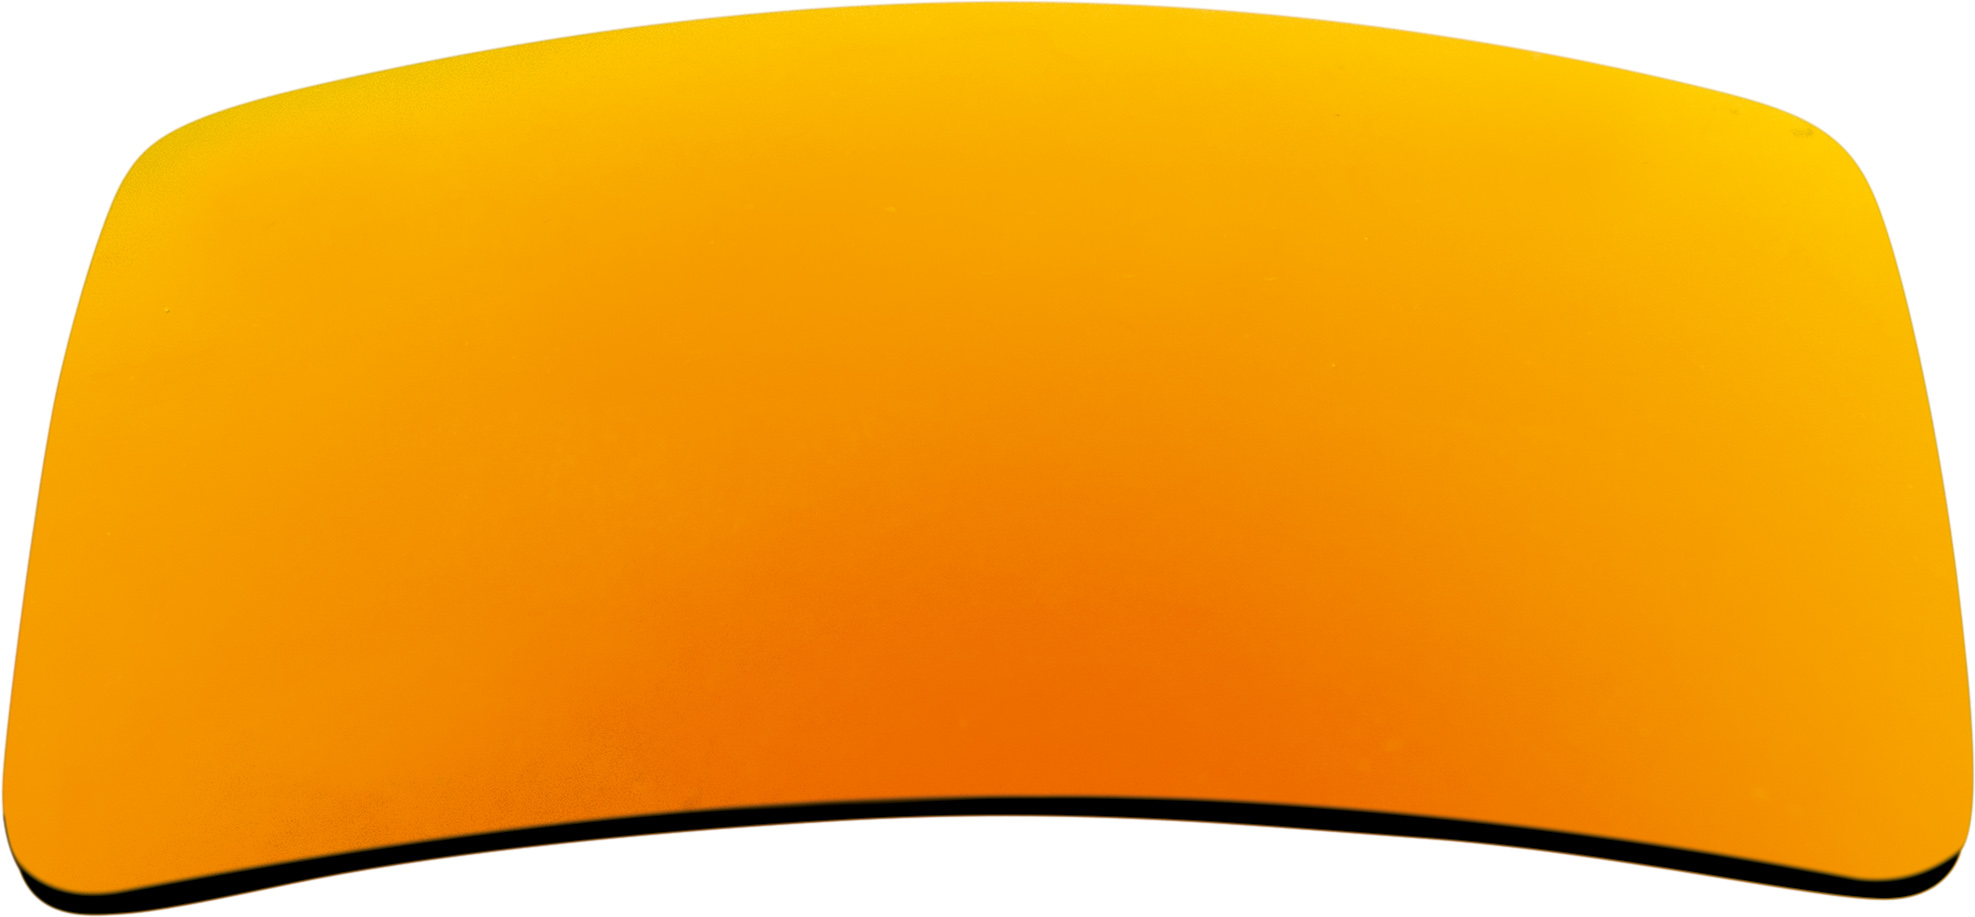 TAC Polascheiben 1,1mm Grau/Orange-verspiegelt